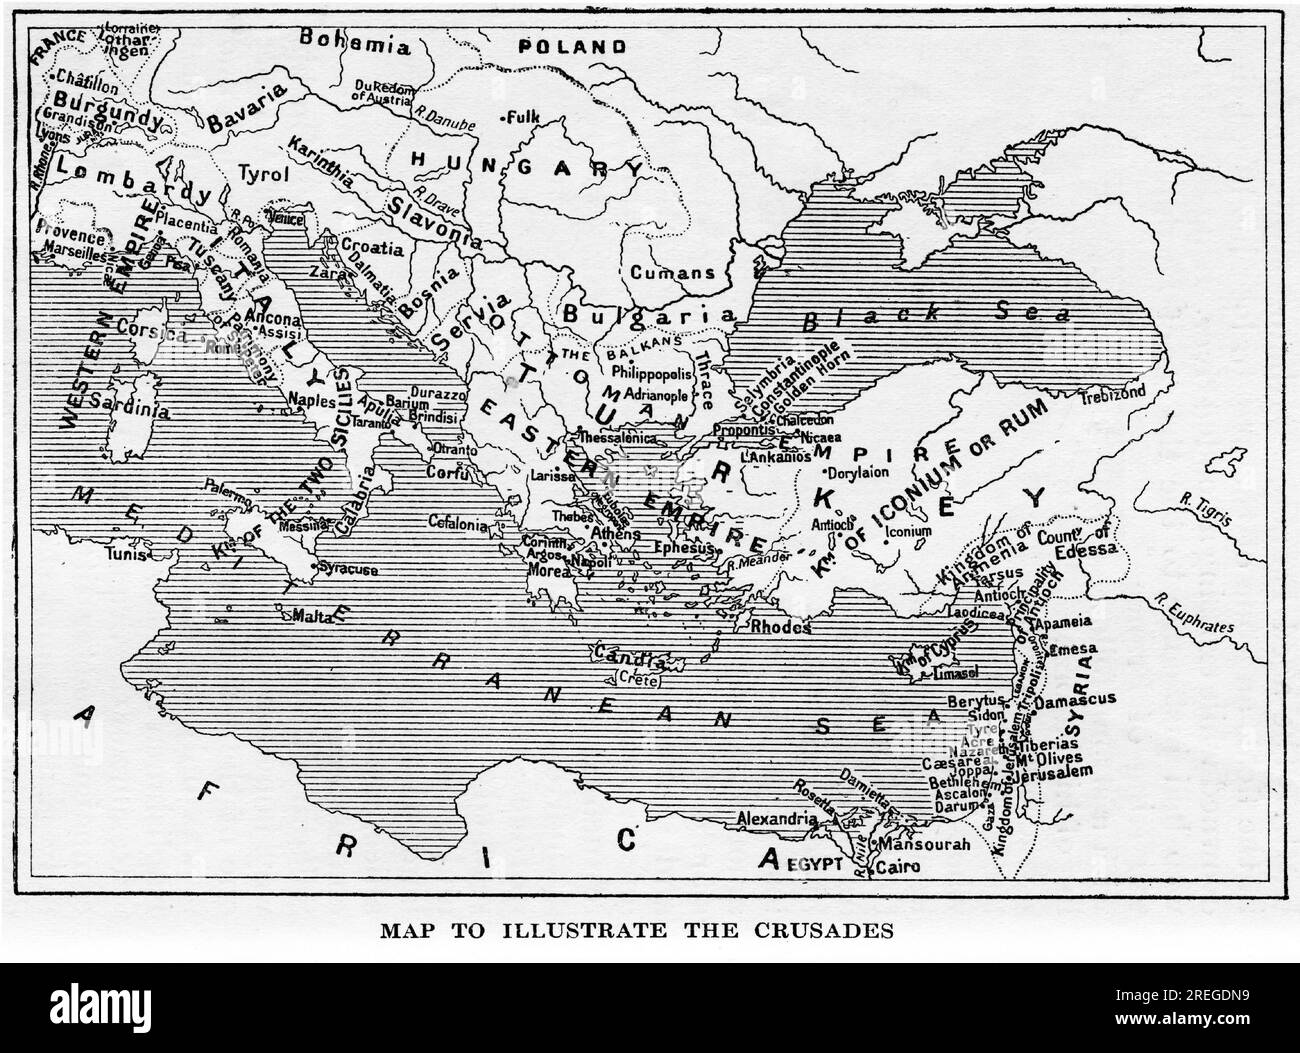 Karte zur Veranschaulichung der Kreuzzüge, veröffentlicht um 1880 Stockfoto